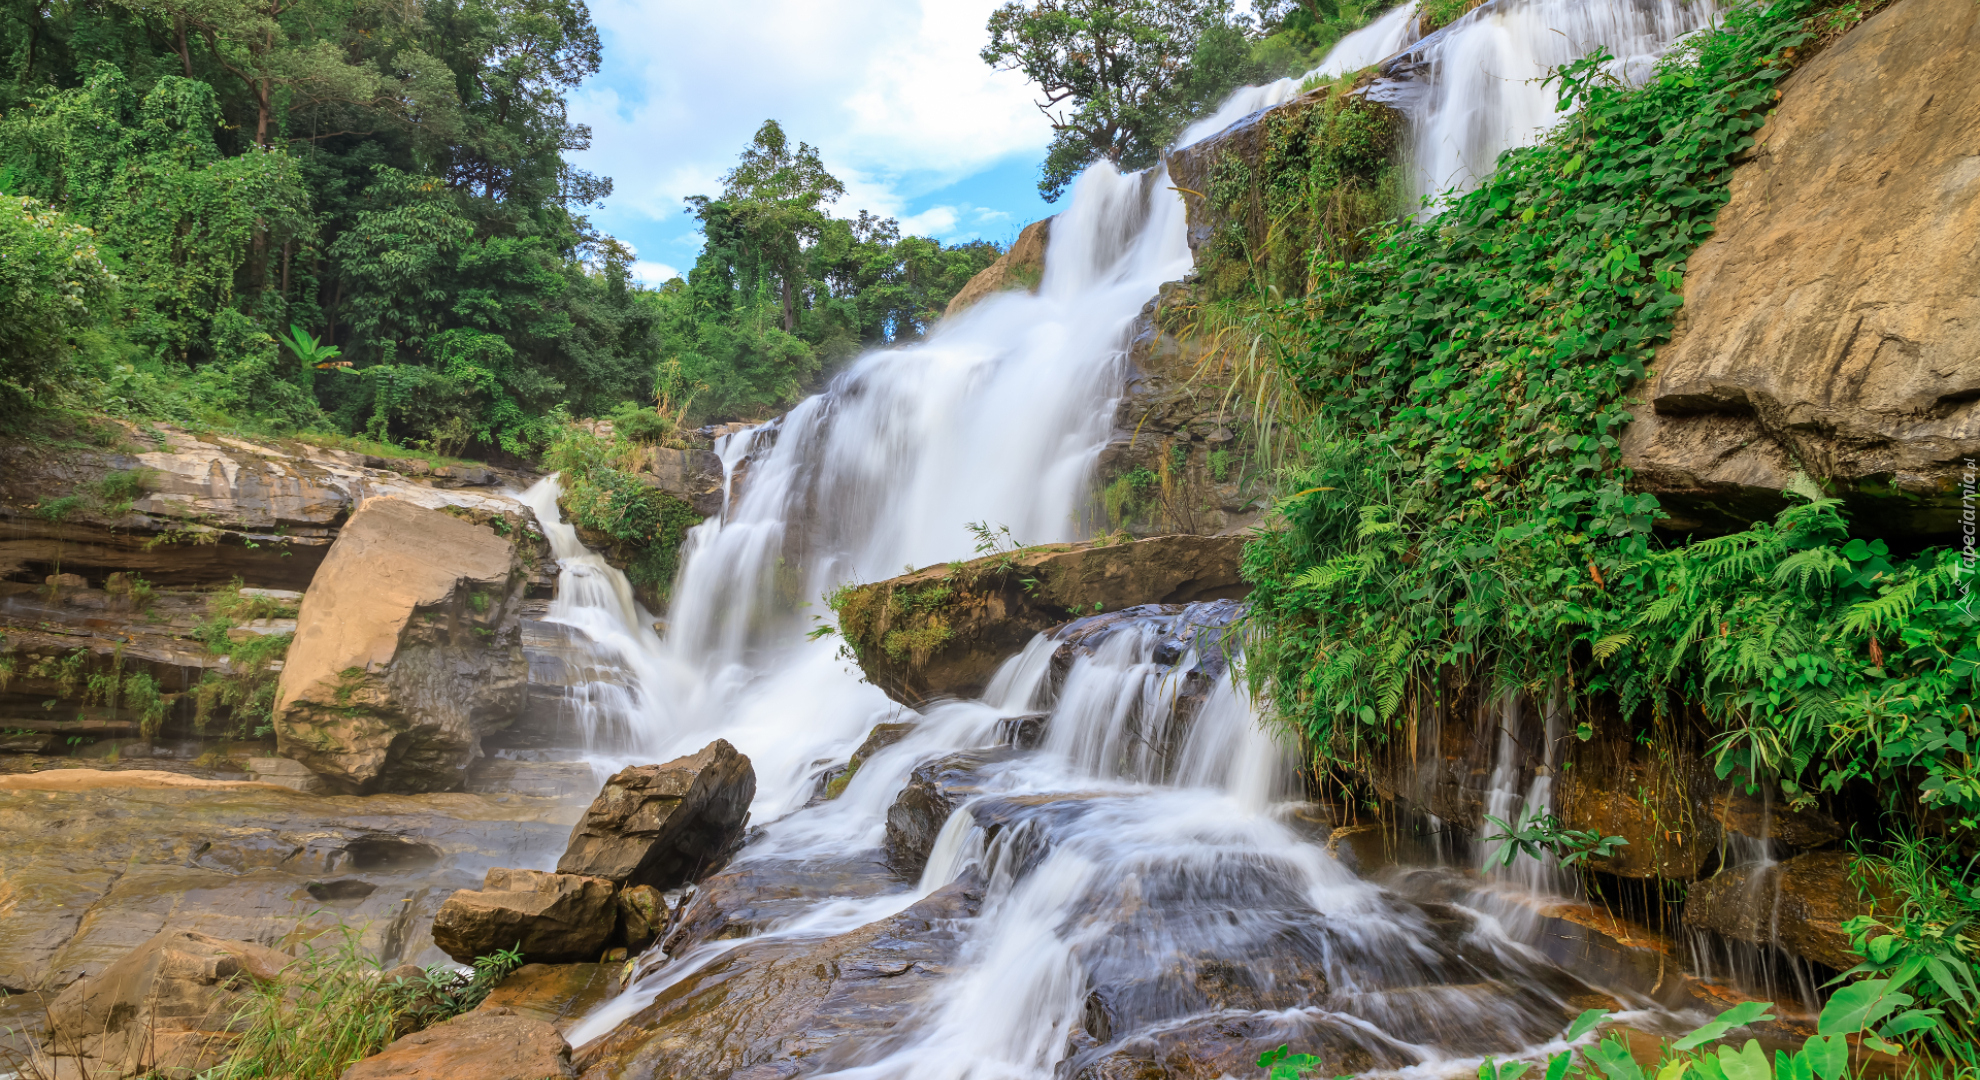 Drzewo, Skały, Roślinność, Kamienie, Wodospad, Mae Ya Waterfall, Park Narodowy Doi Inthanon, Chiang Mai, Tajlandia